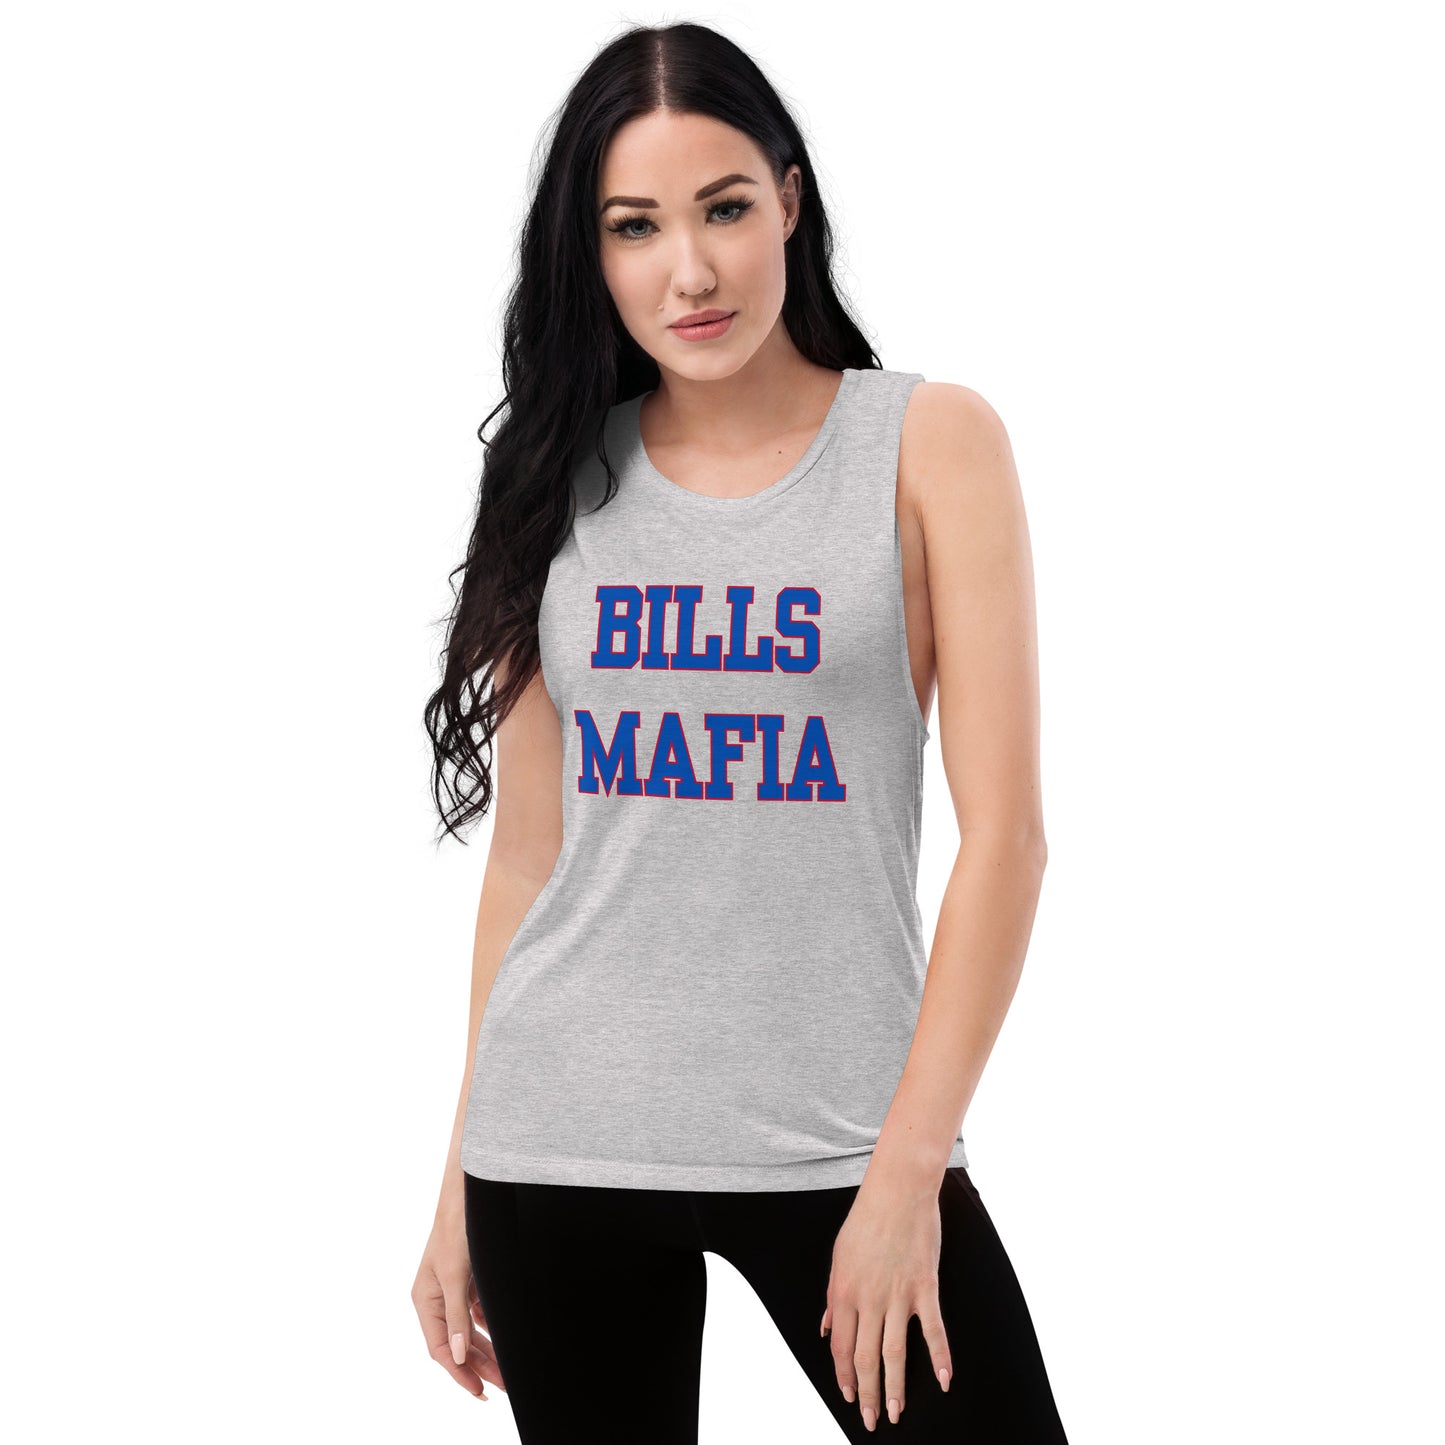 Bills Mafia Ladies’ Muscle Tank